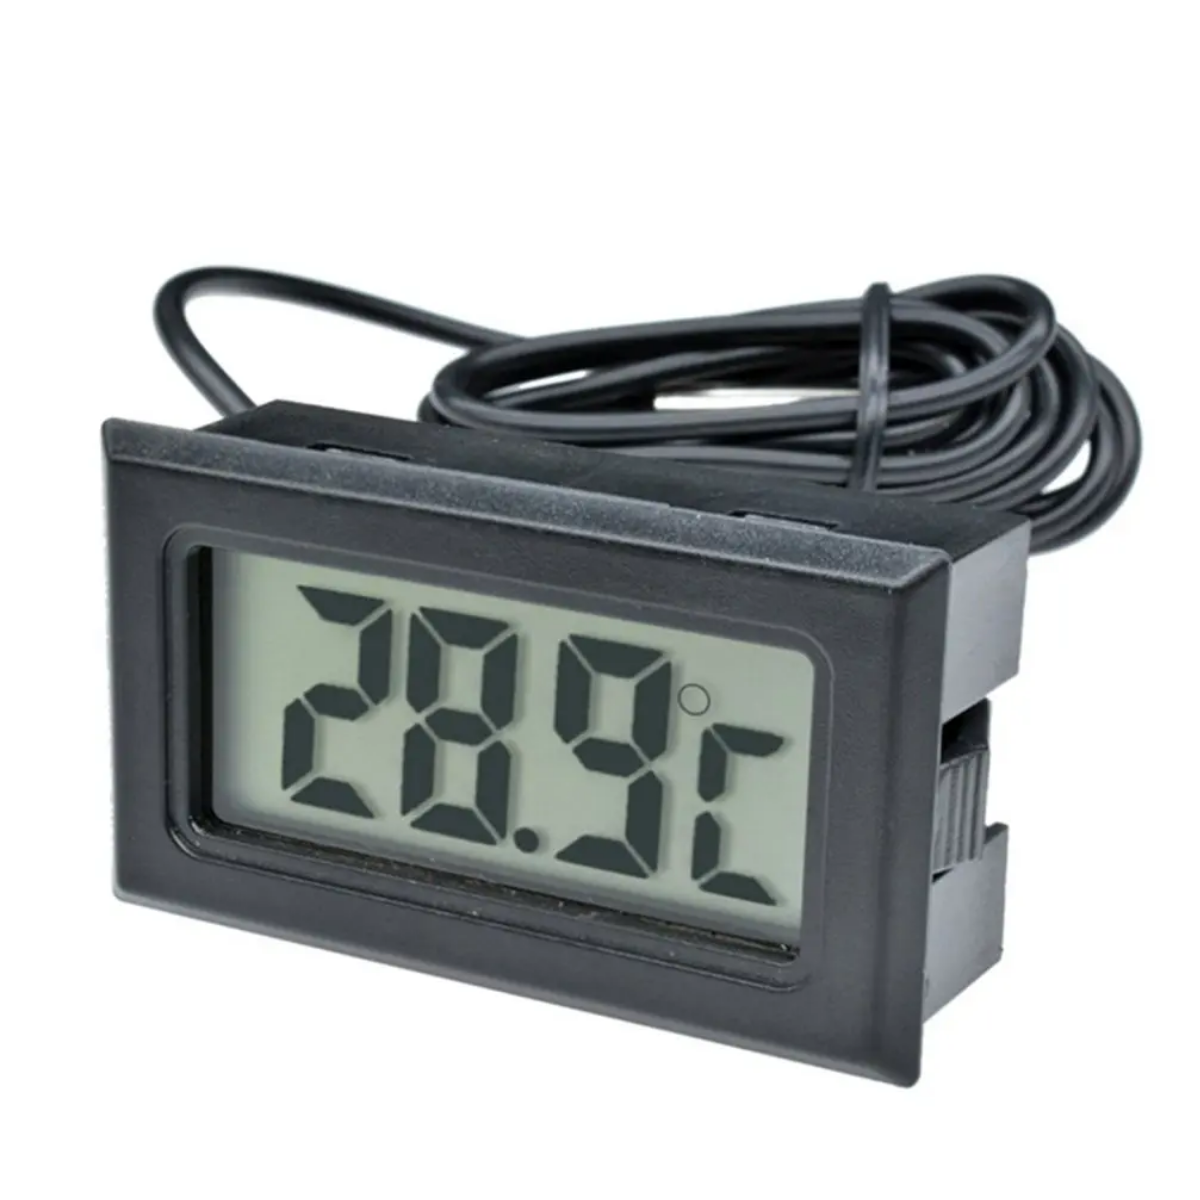 Цифровой термометр с датчиком 1 м, черный